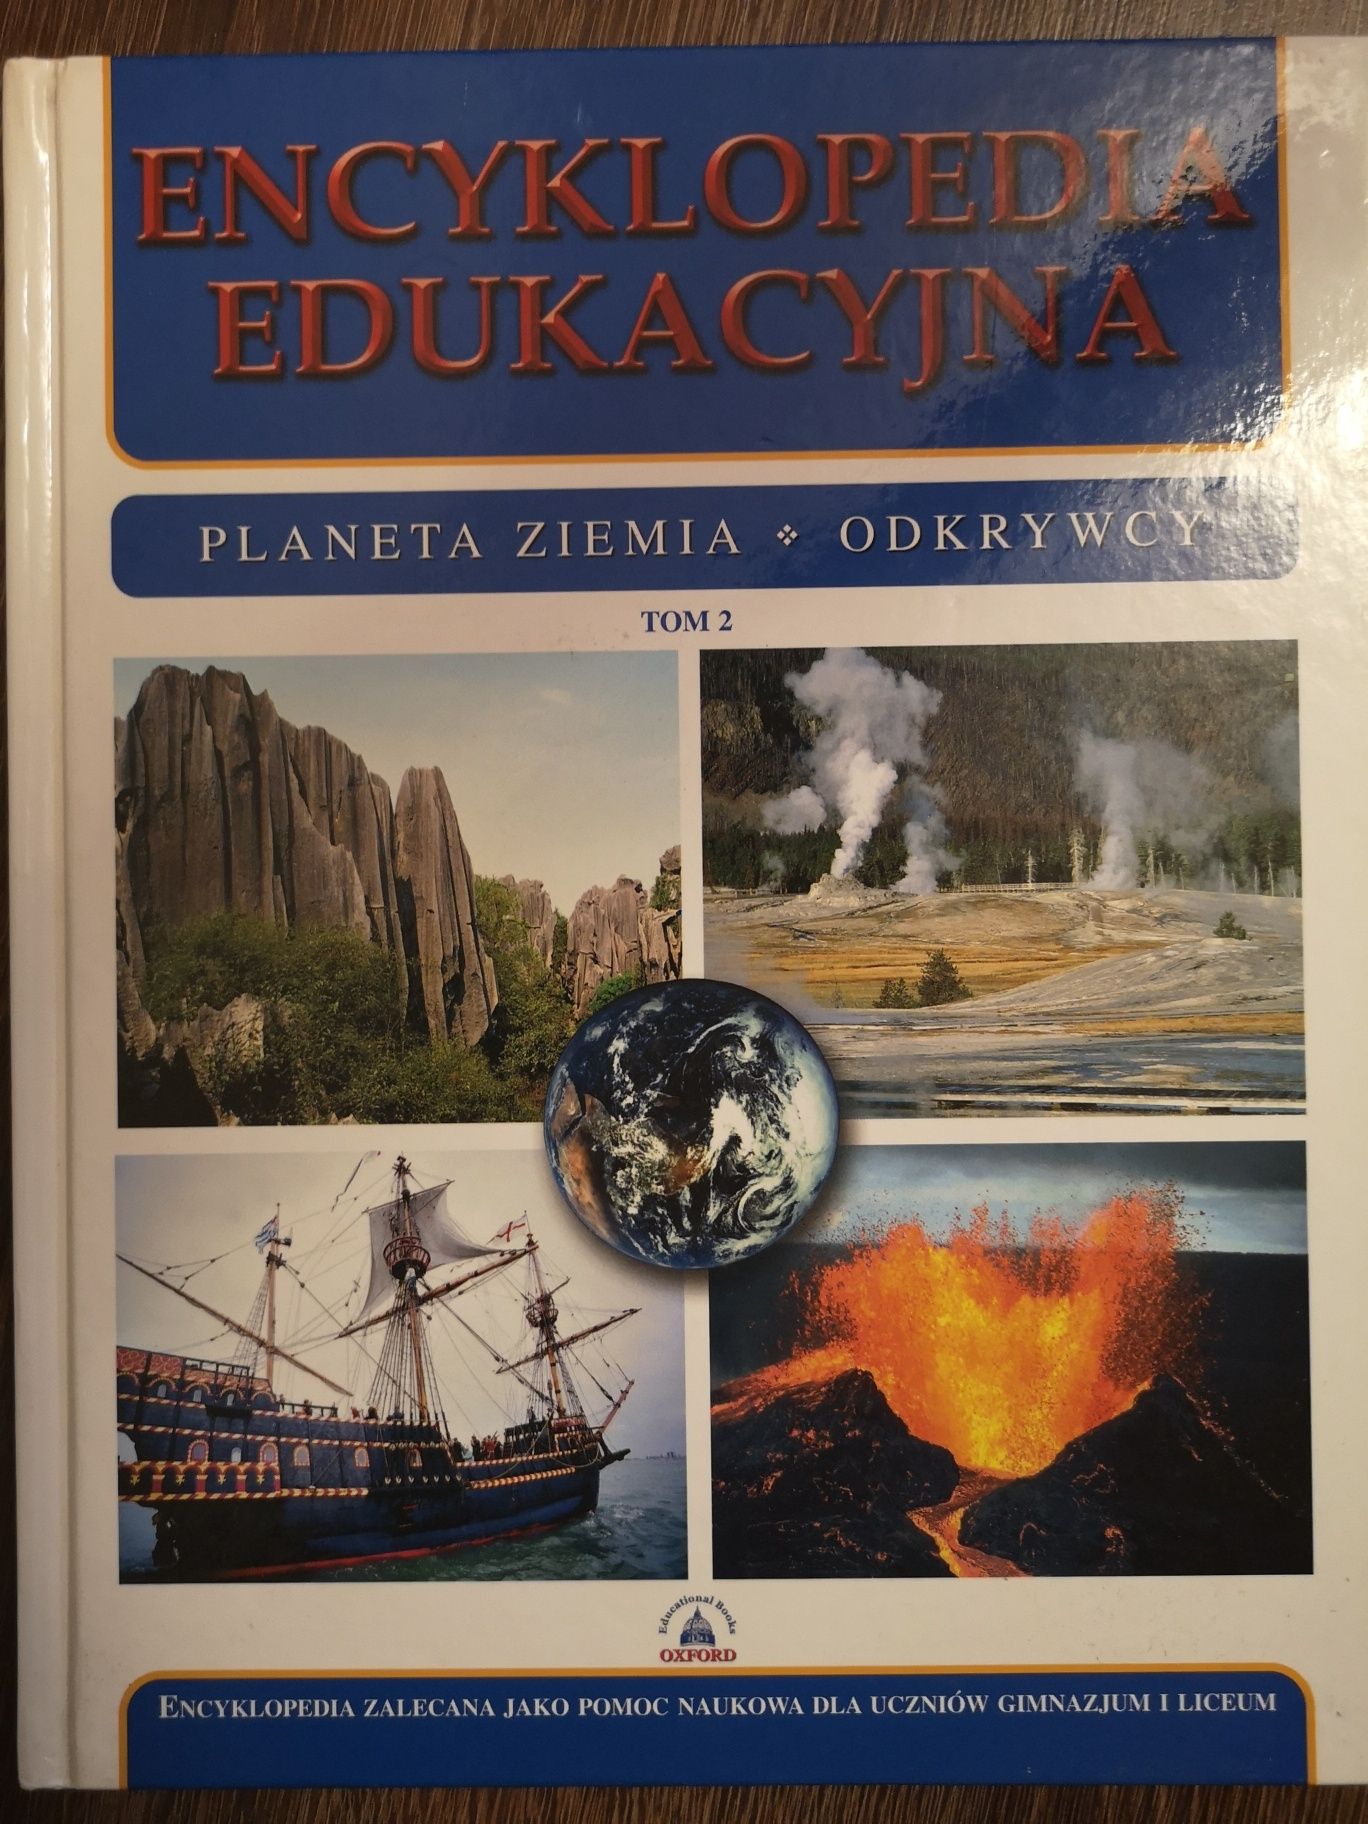 Encyklopedia edukacyjna planeta ziemia odkrywcy tom 2